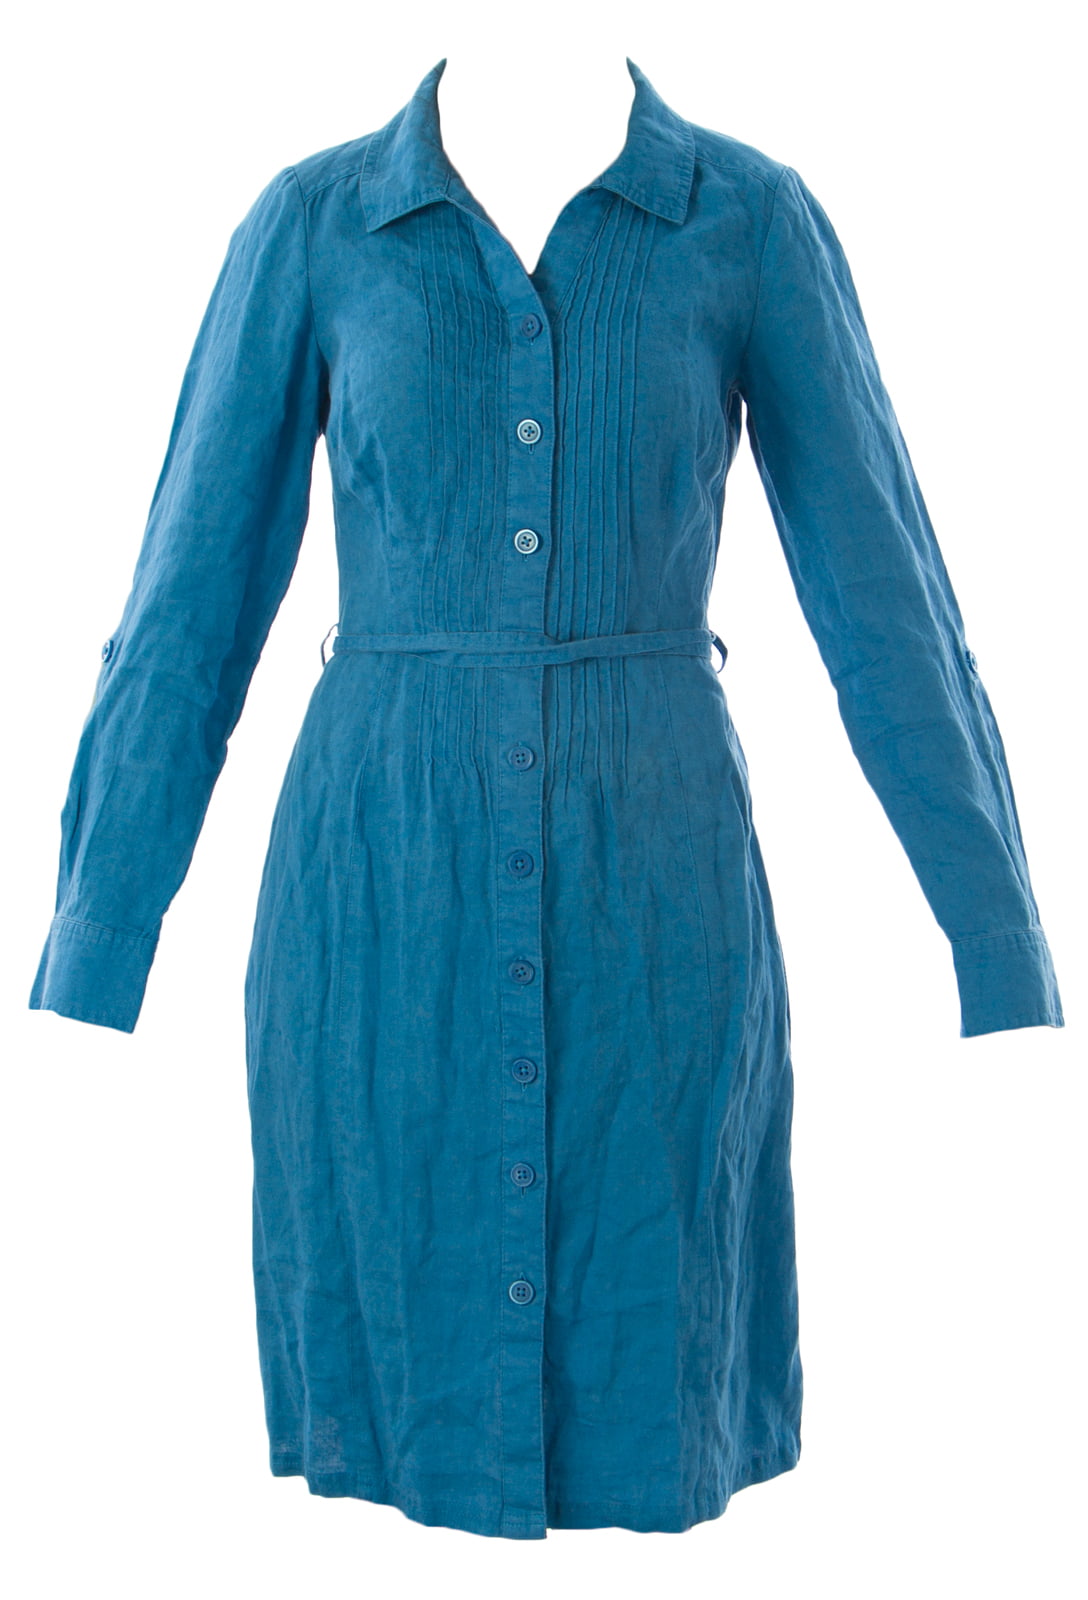 Boden - BODEN Women's Linen Shirt Dress Dodger Blue - Walmart.com ...